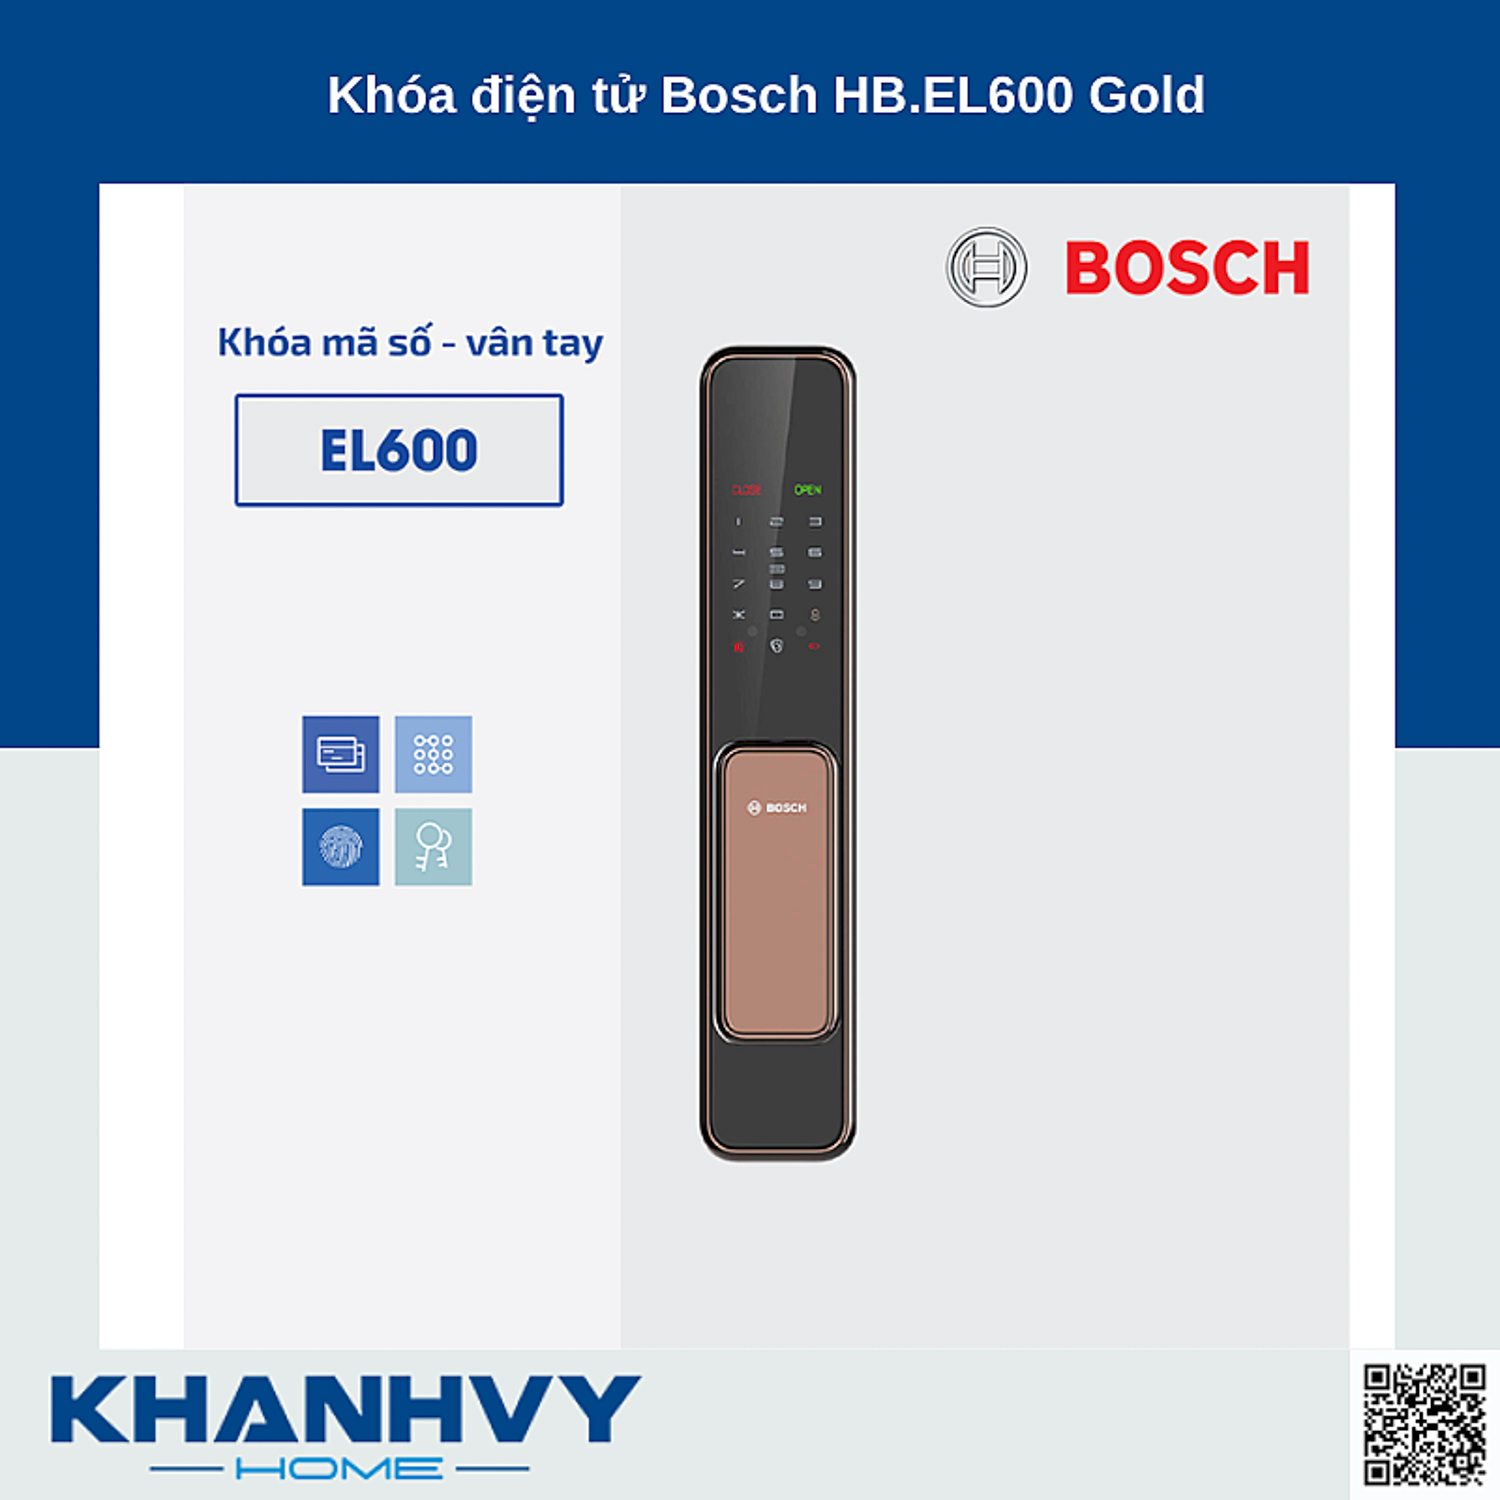 Khóa điện tử Bosch HB.EL600 Gold được sản xuất theo tiêu chuẩn chất lượng Đức